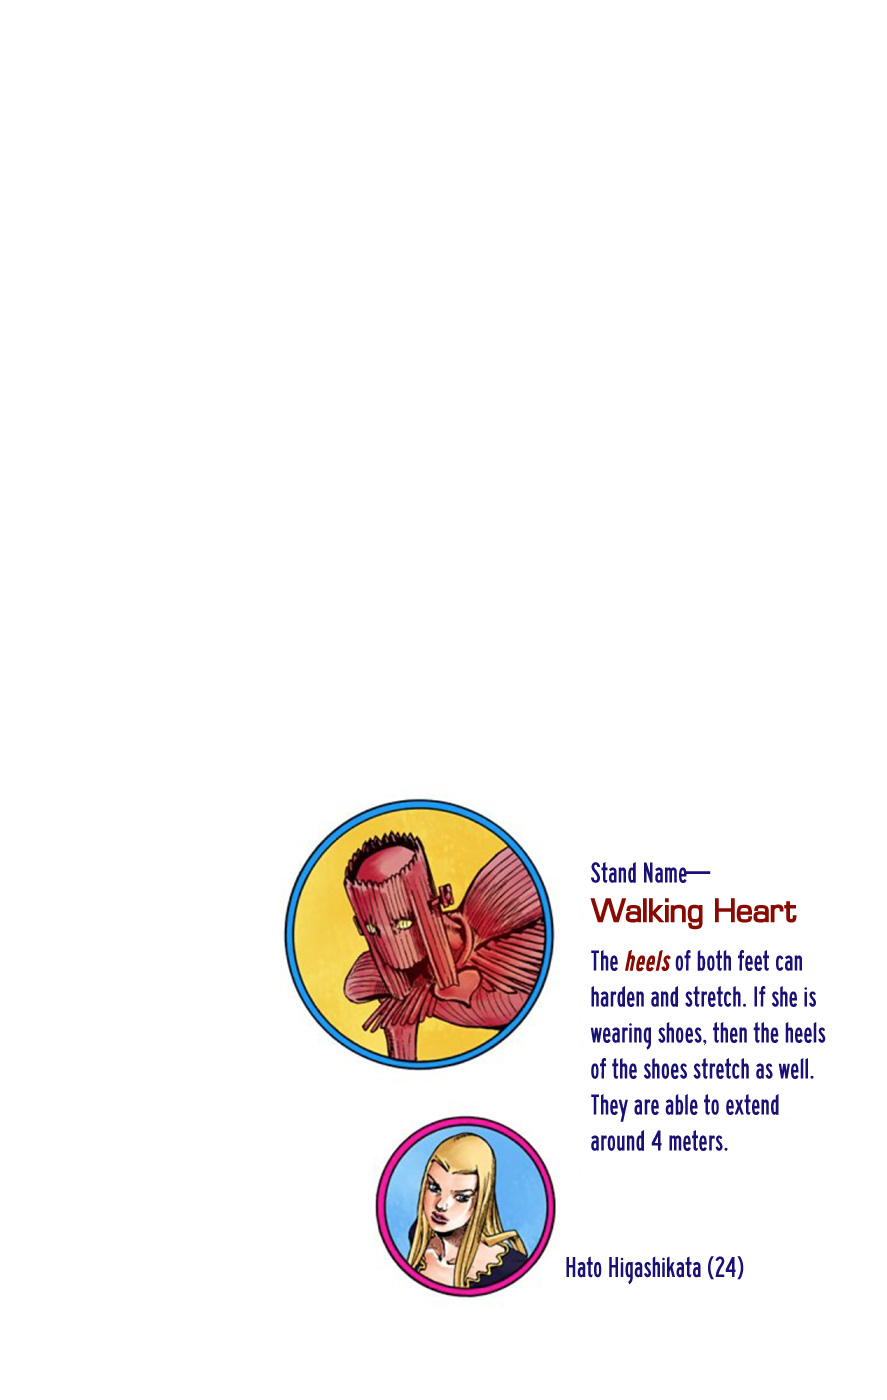 JoJo's Bizarre Adventure Part 8 JoJolion (Official Colored) Vol. 14 Ch. 55 Walking Heart, Breaking Heart